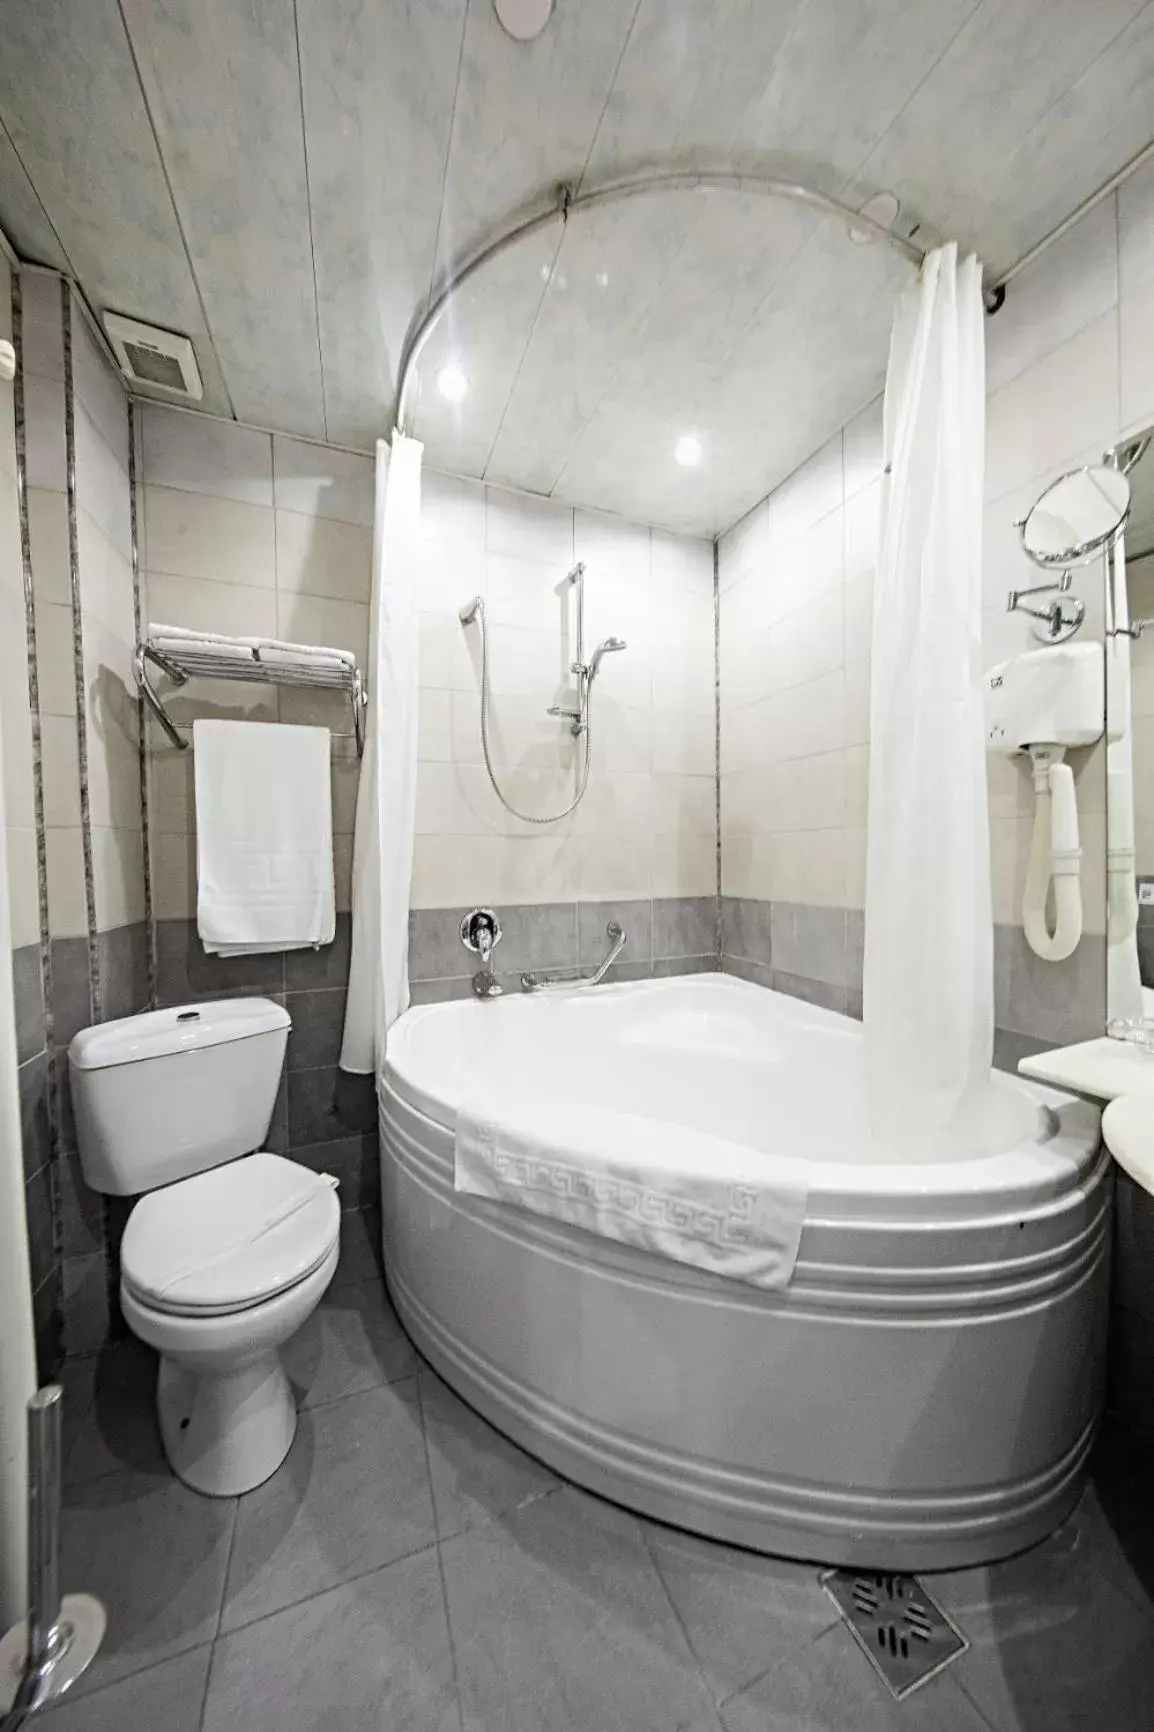 Bathroom in Relax Comfort Suites Hotel